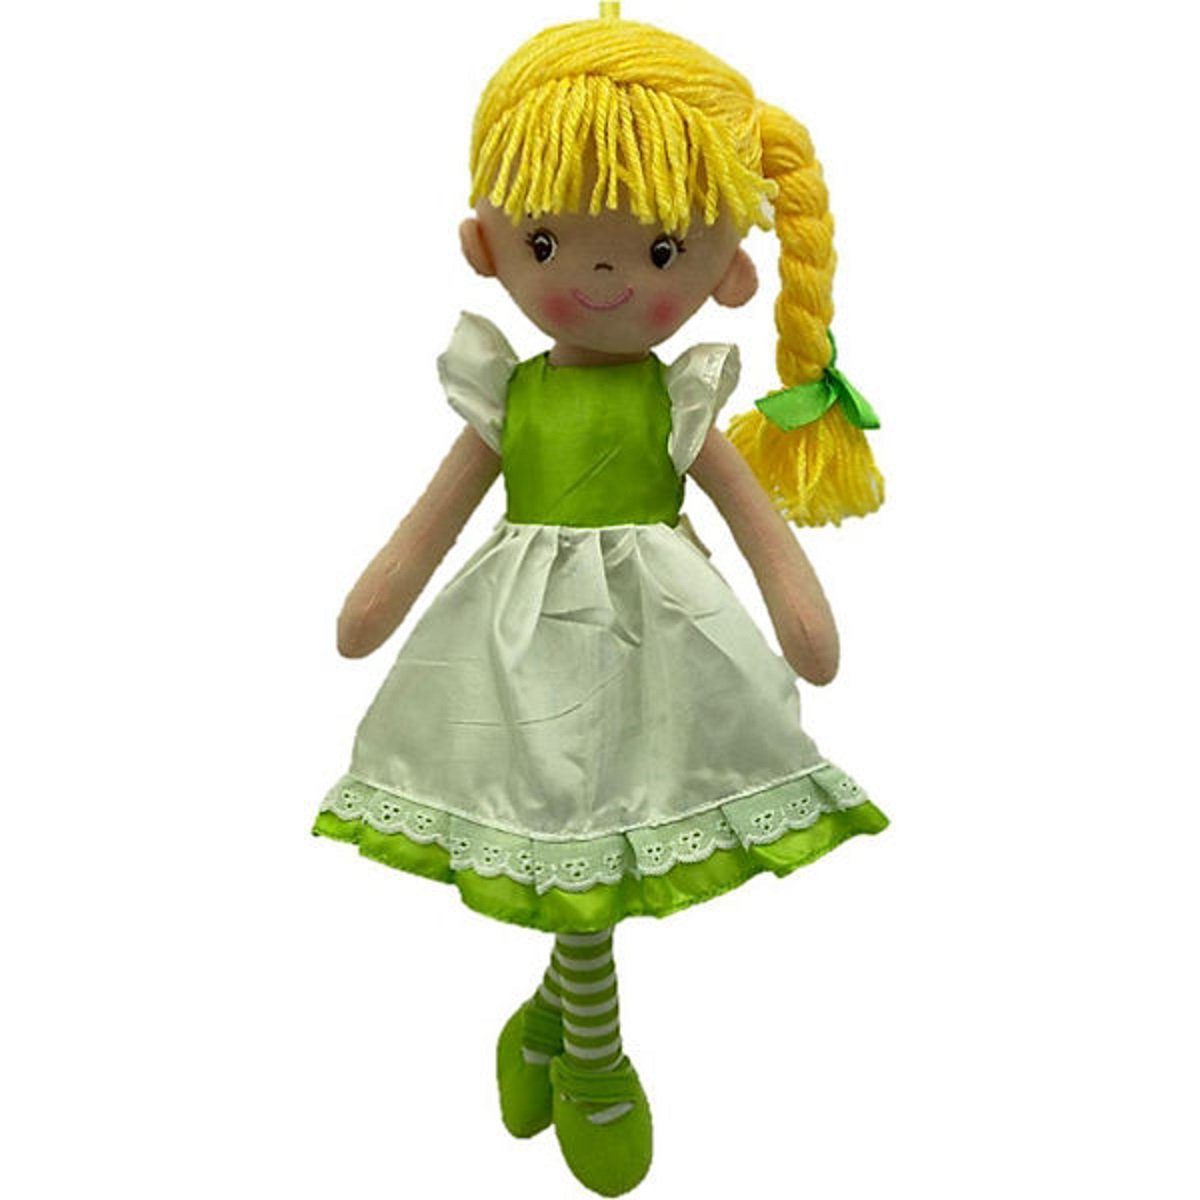 Sweety-Toys Stoffpuppe Sweety Toys 13319 Stoffpuppe Ballerina Fee Plüschtier Prinzessin 40 cm grün